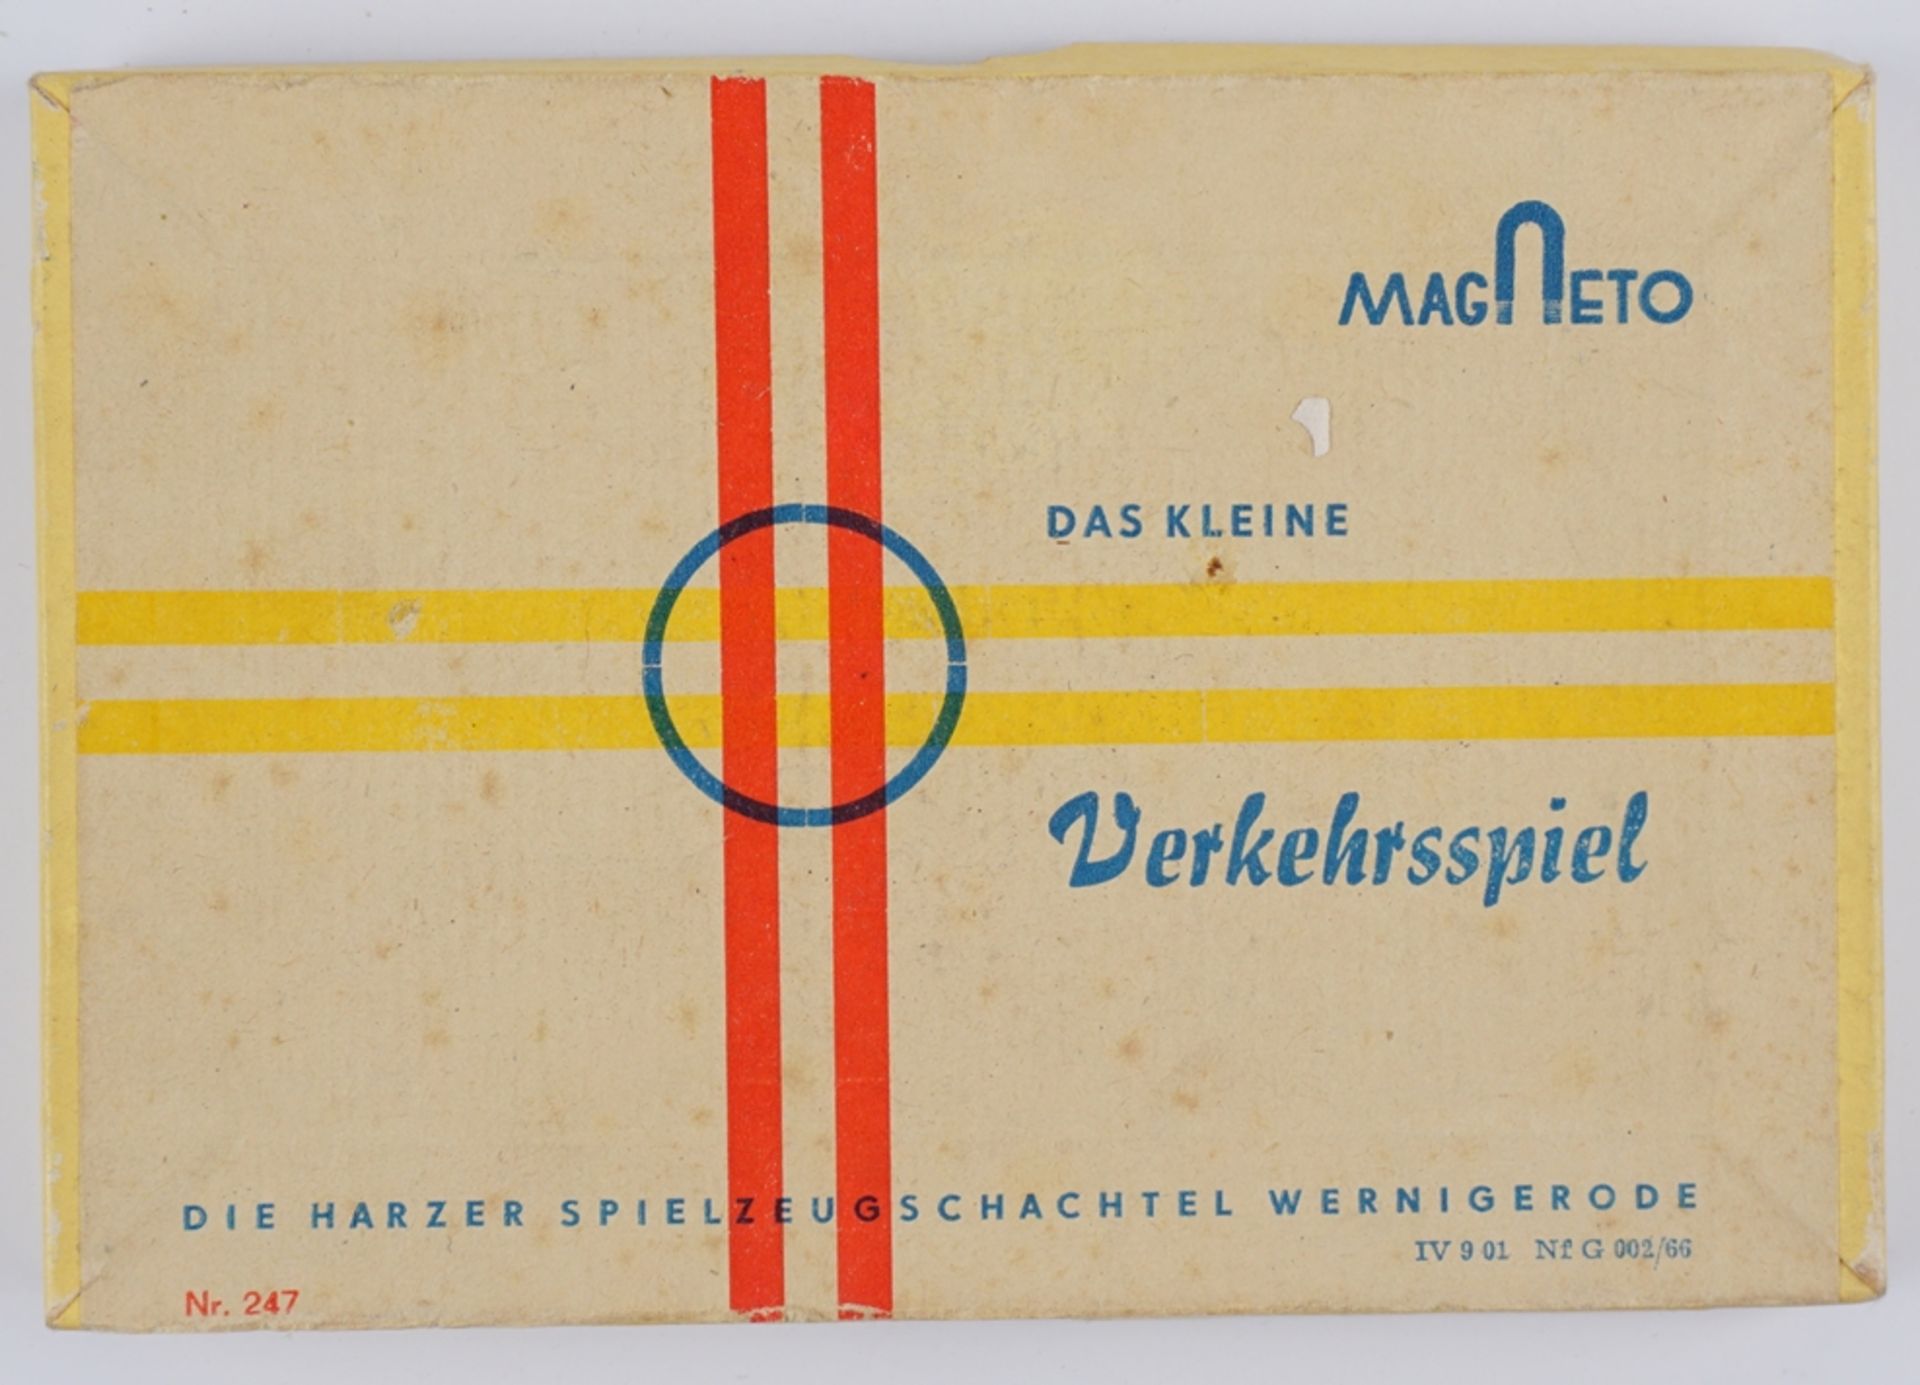 "Das kleine Verkehrsspiel", MAGNETO, Nr.247, Harzer Spielzeugschachtel Wernigerode, 1950er/1960er J - Bild 2 aus 2